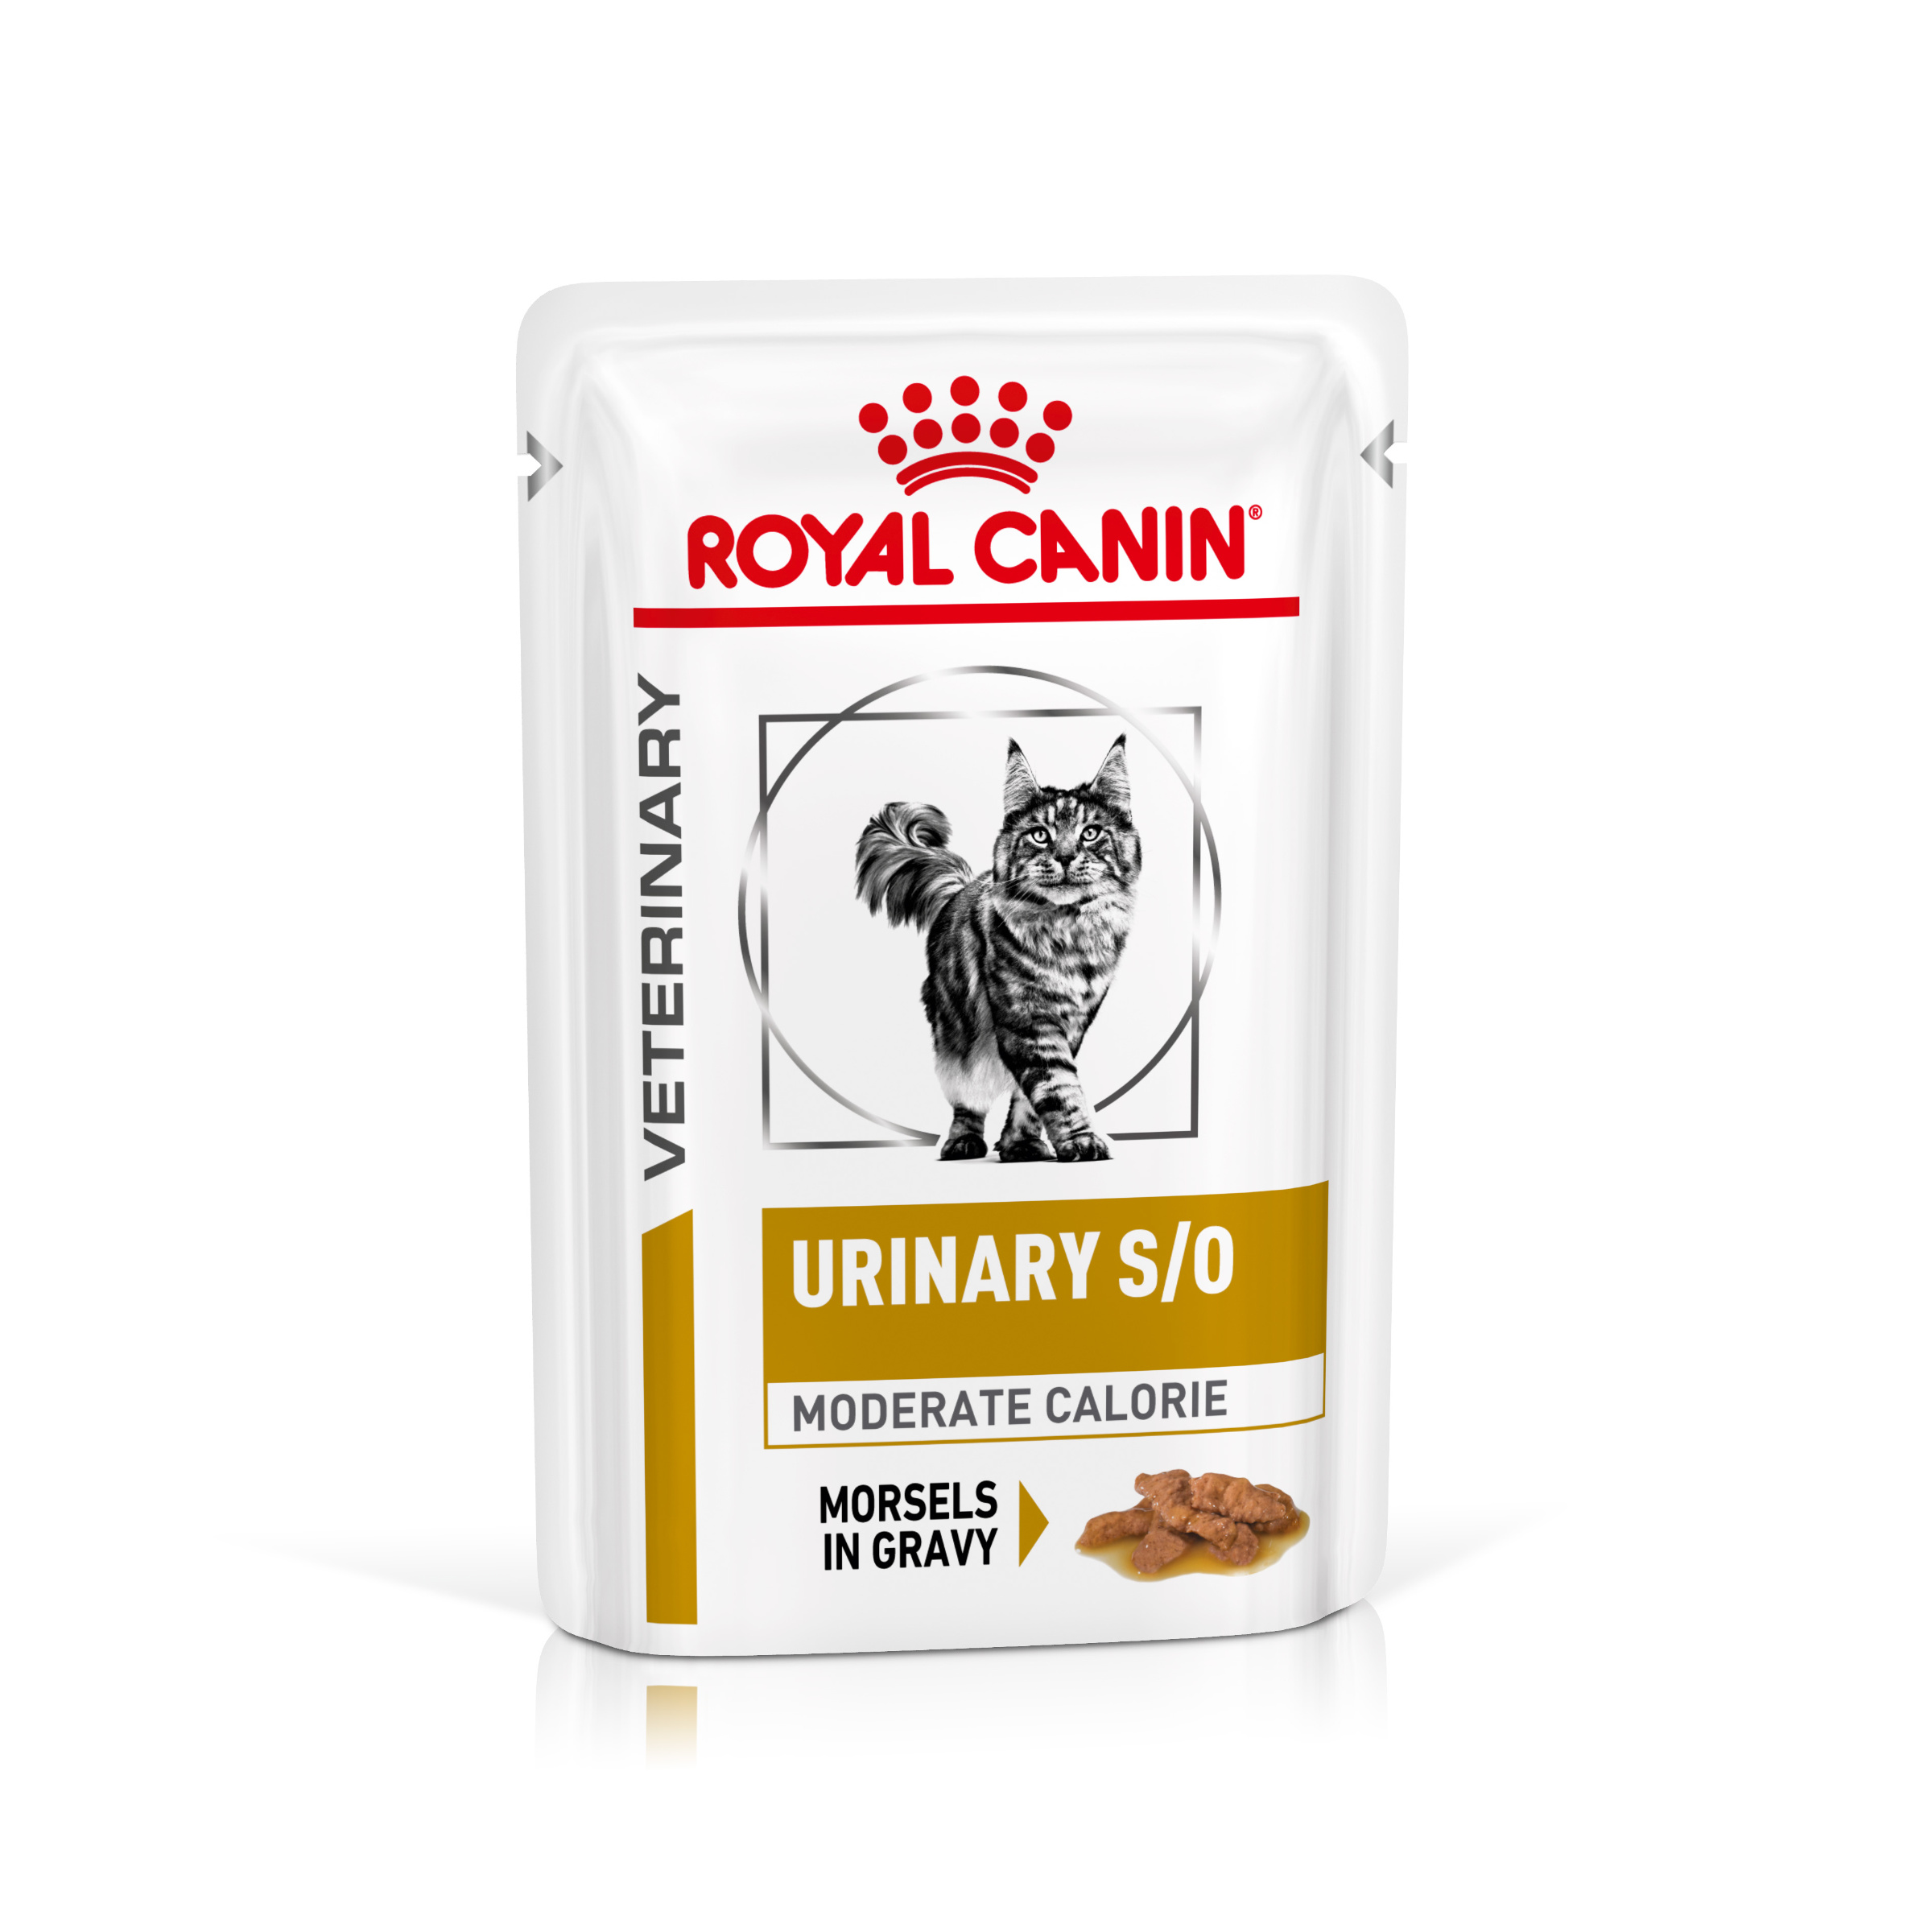 Royal Canin Veterinary Health Nutrition Cat URINARY MC kapsa in gravy - 85g